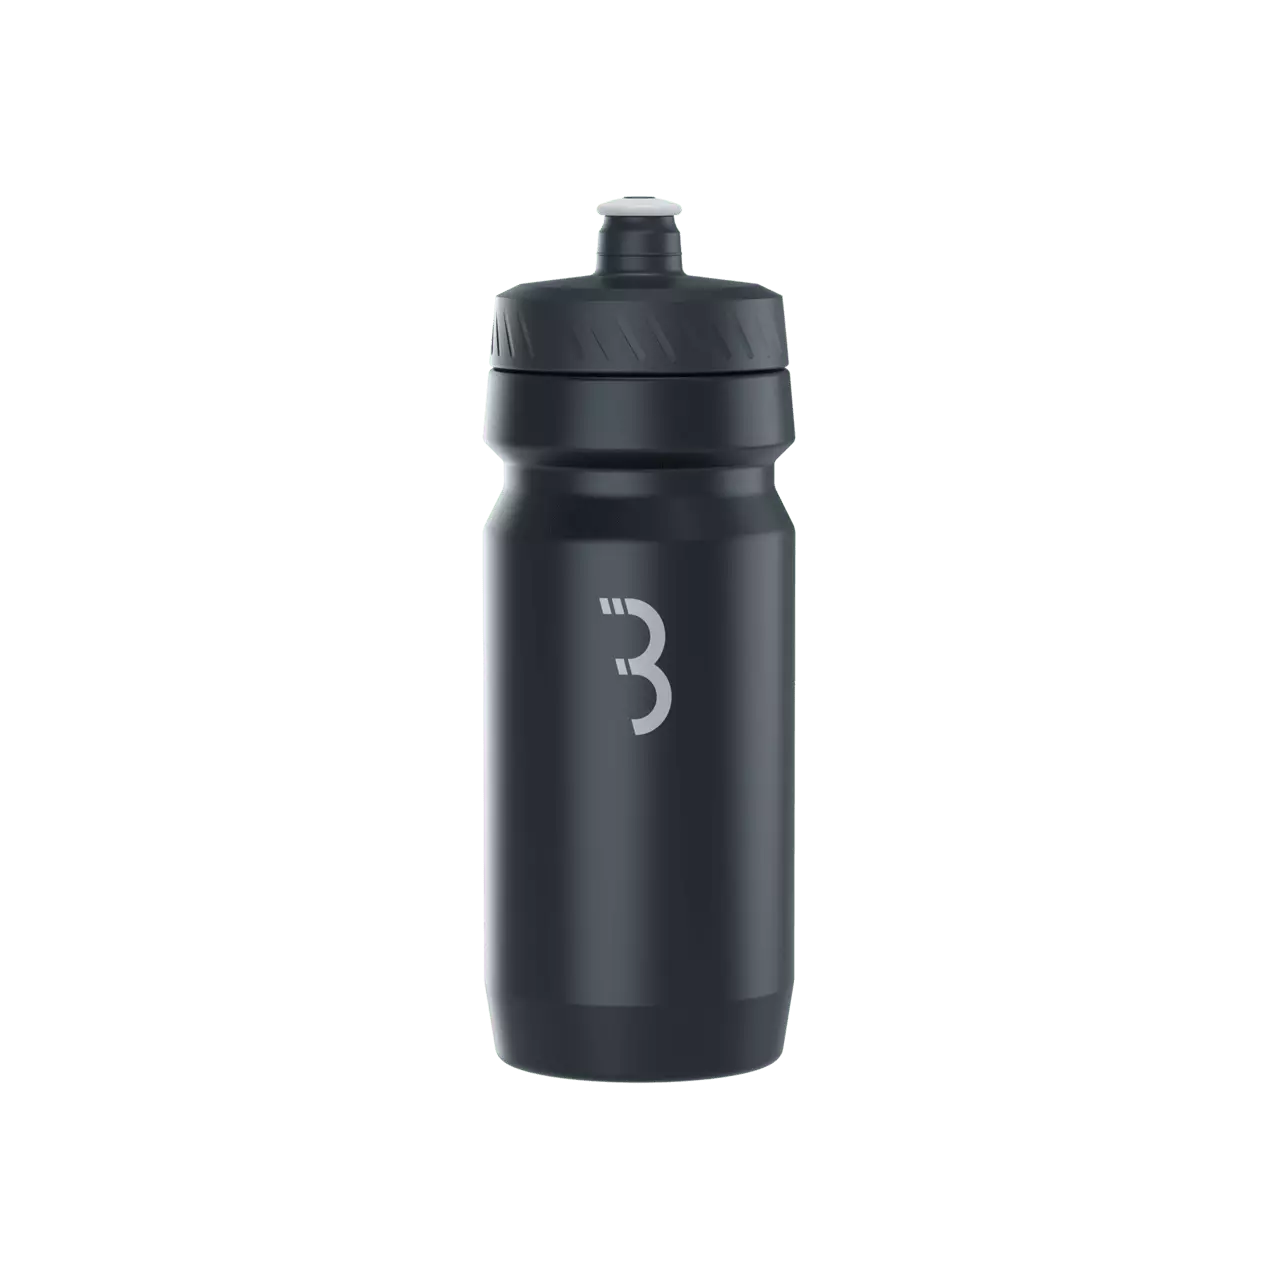 BBB Cycling kerékpáros kulacs BWB-01 CompTank, 550ml, BPA mentes, mosogatógépben is mosható, fekete/szürke